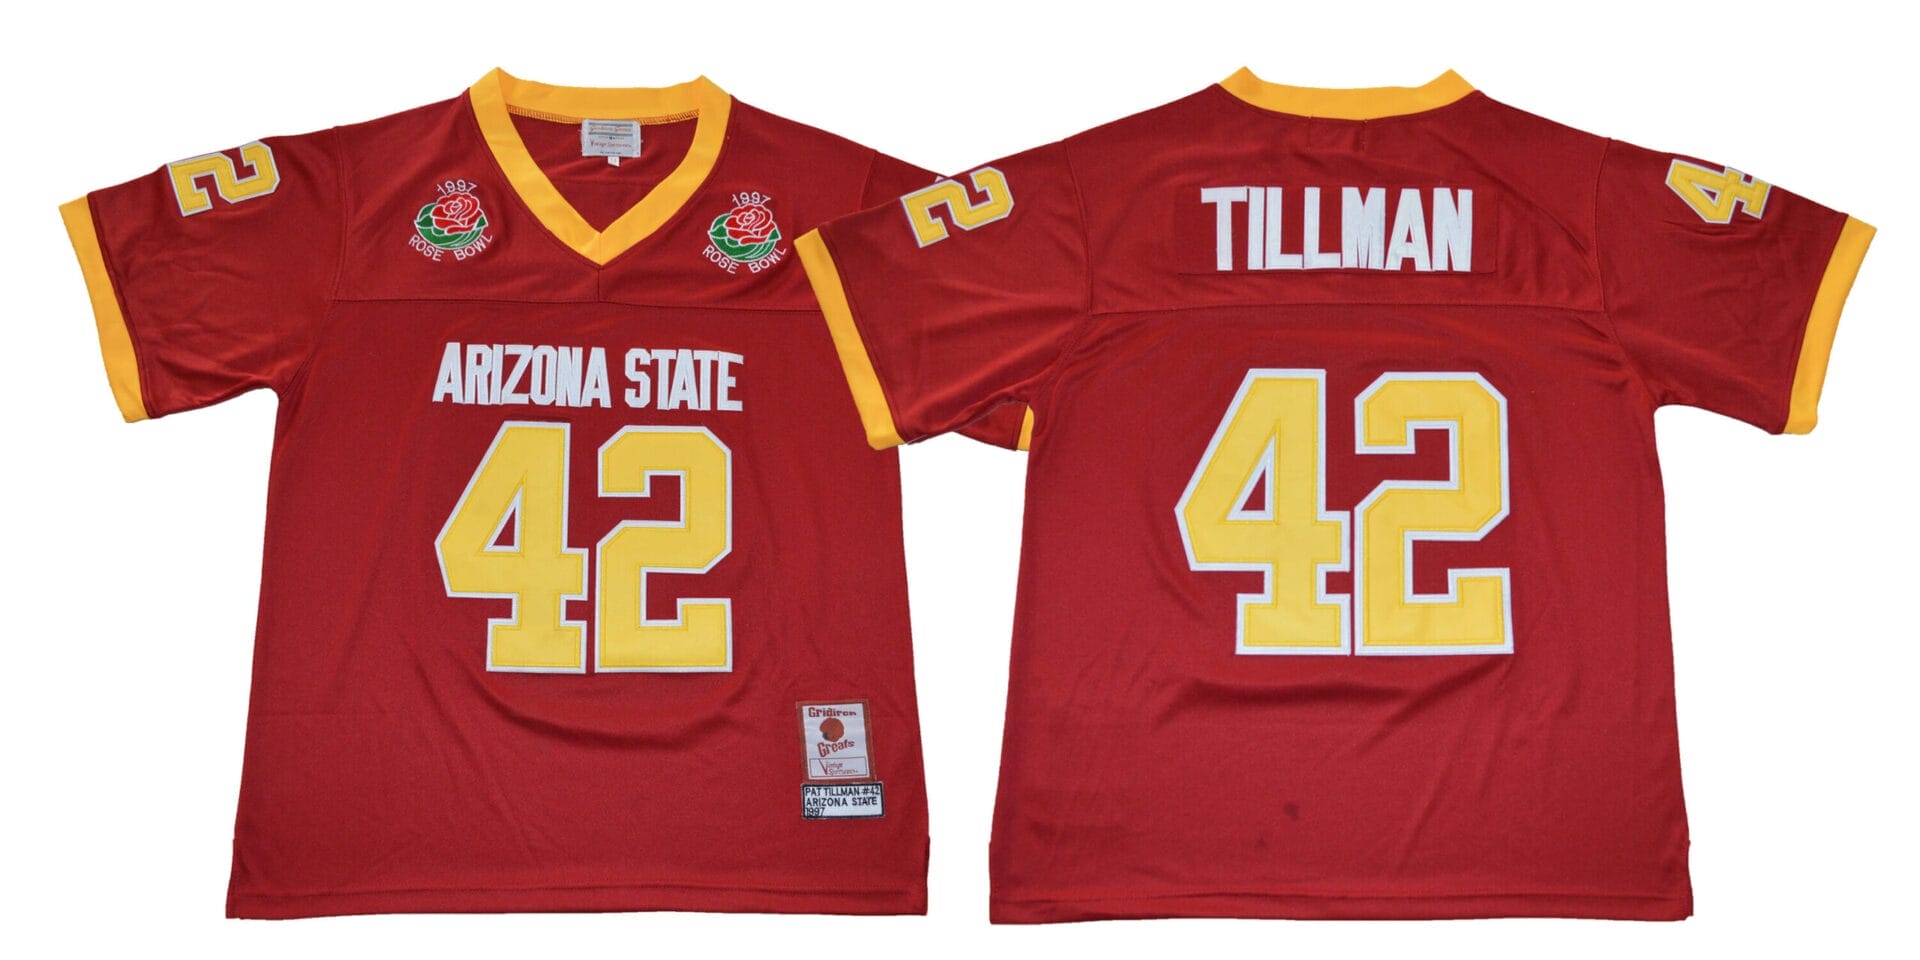 Arizona State Sun Devils #42 Pat Tillman NCAA Football Jersey Red